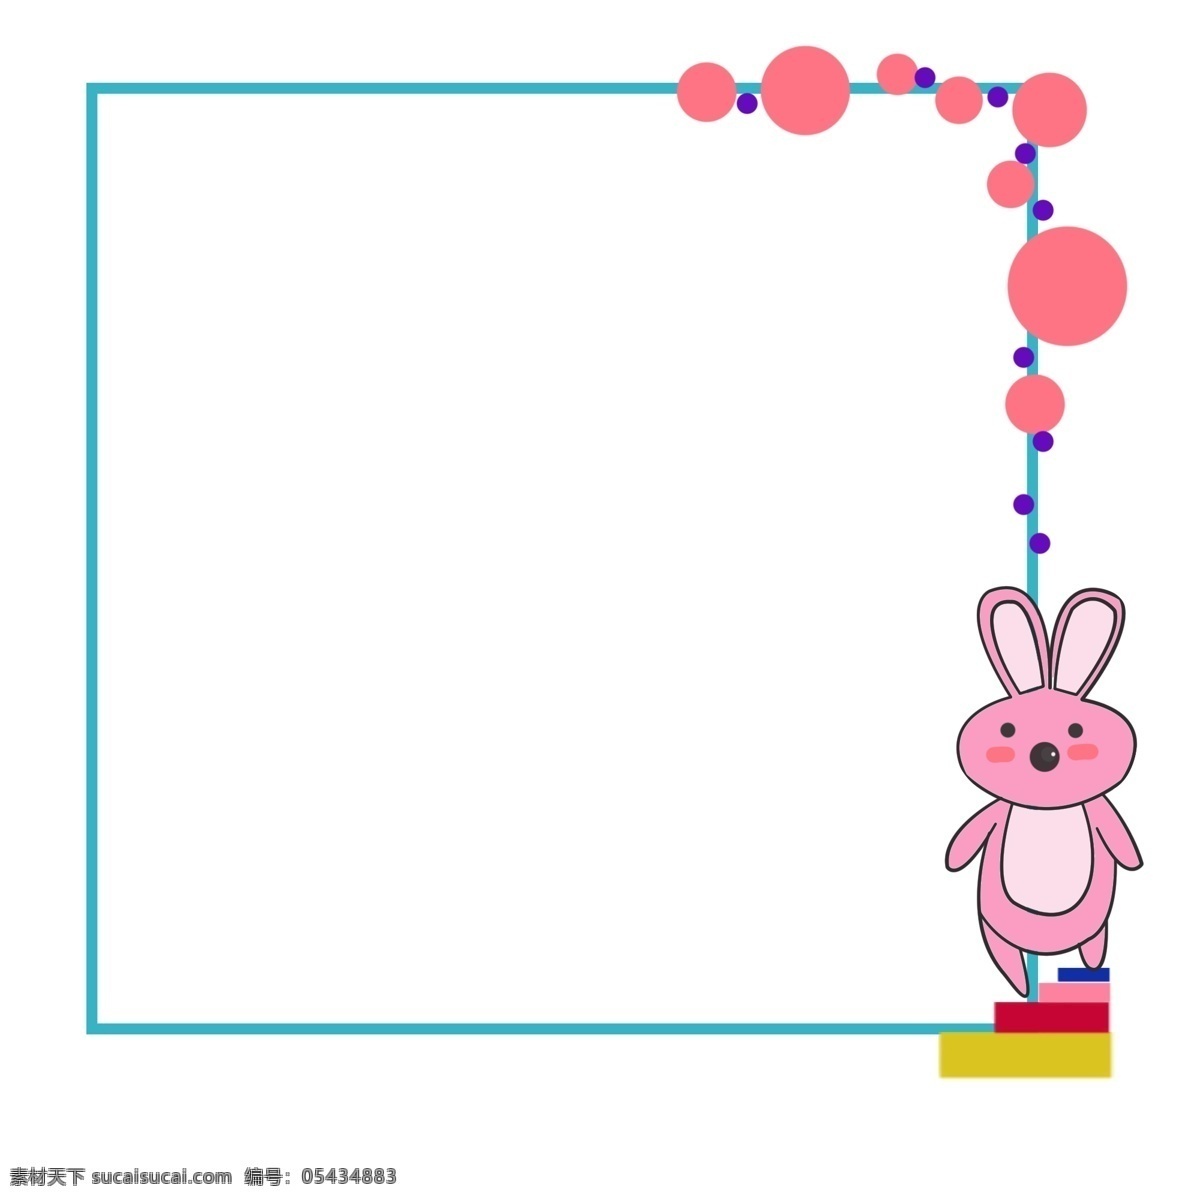 粉色 小 兔子 边框 装饰 绿色边框 正方形边框 粉色小兔子 小兔子边框 小动物边框 可爱的边框 边框装饰